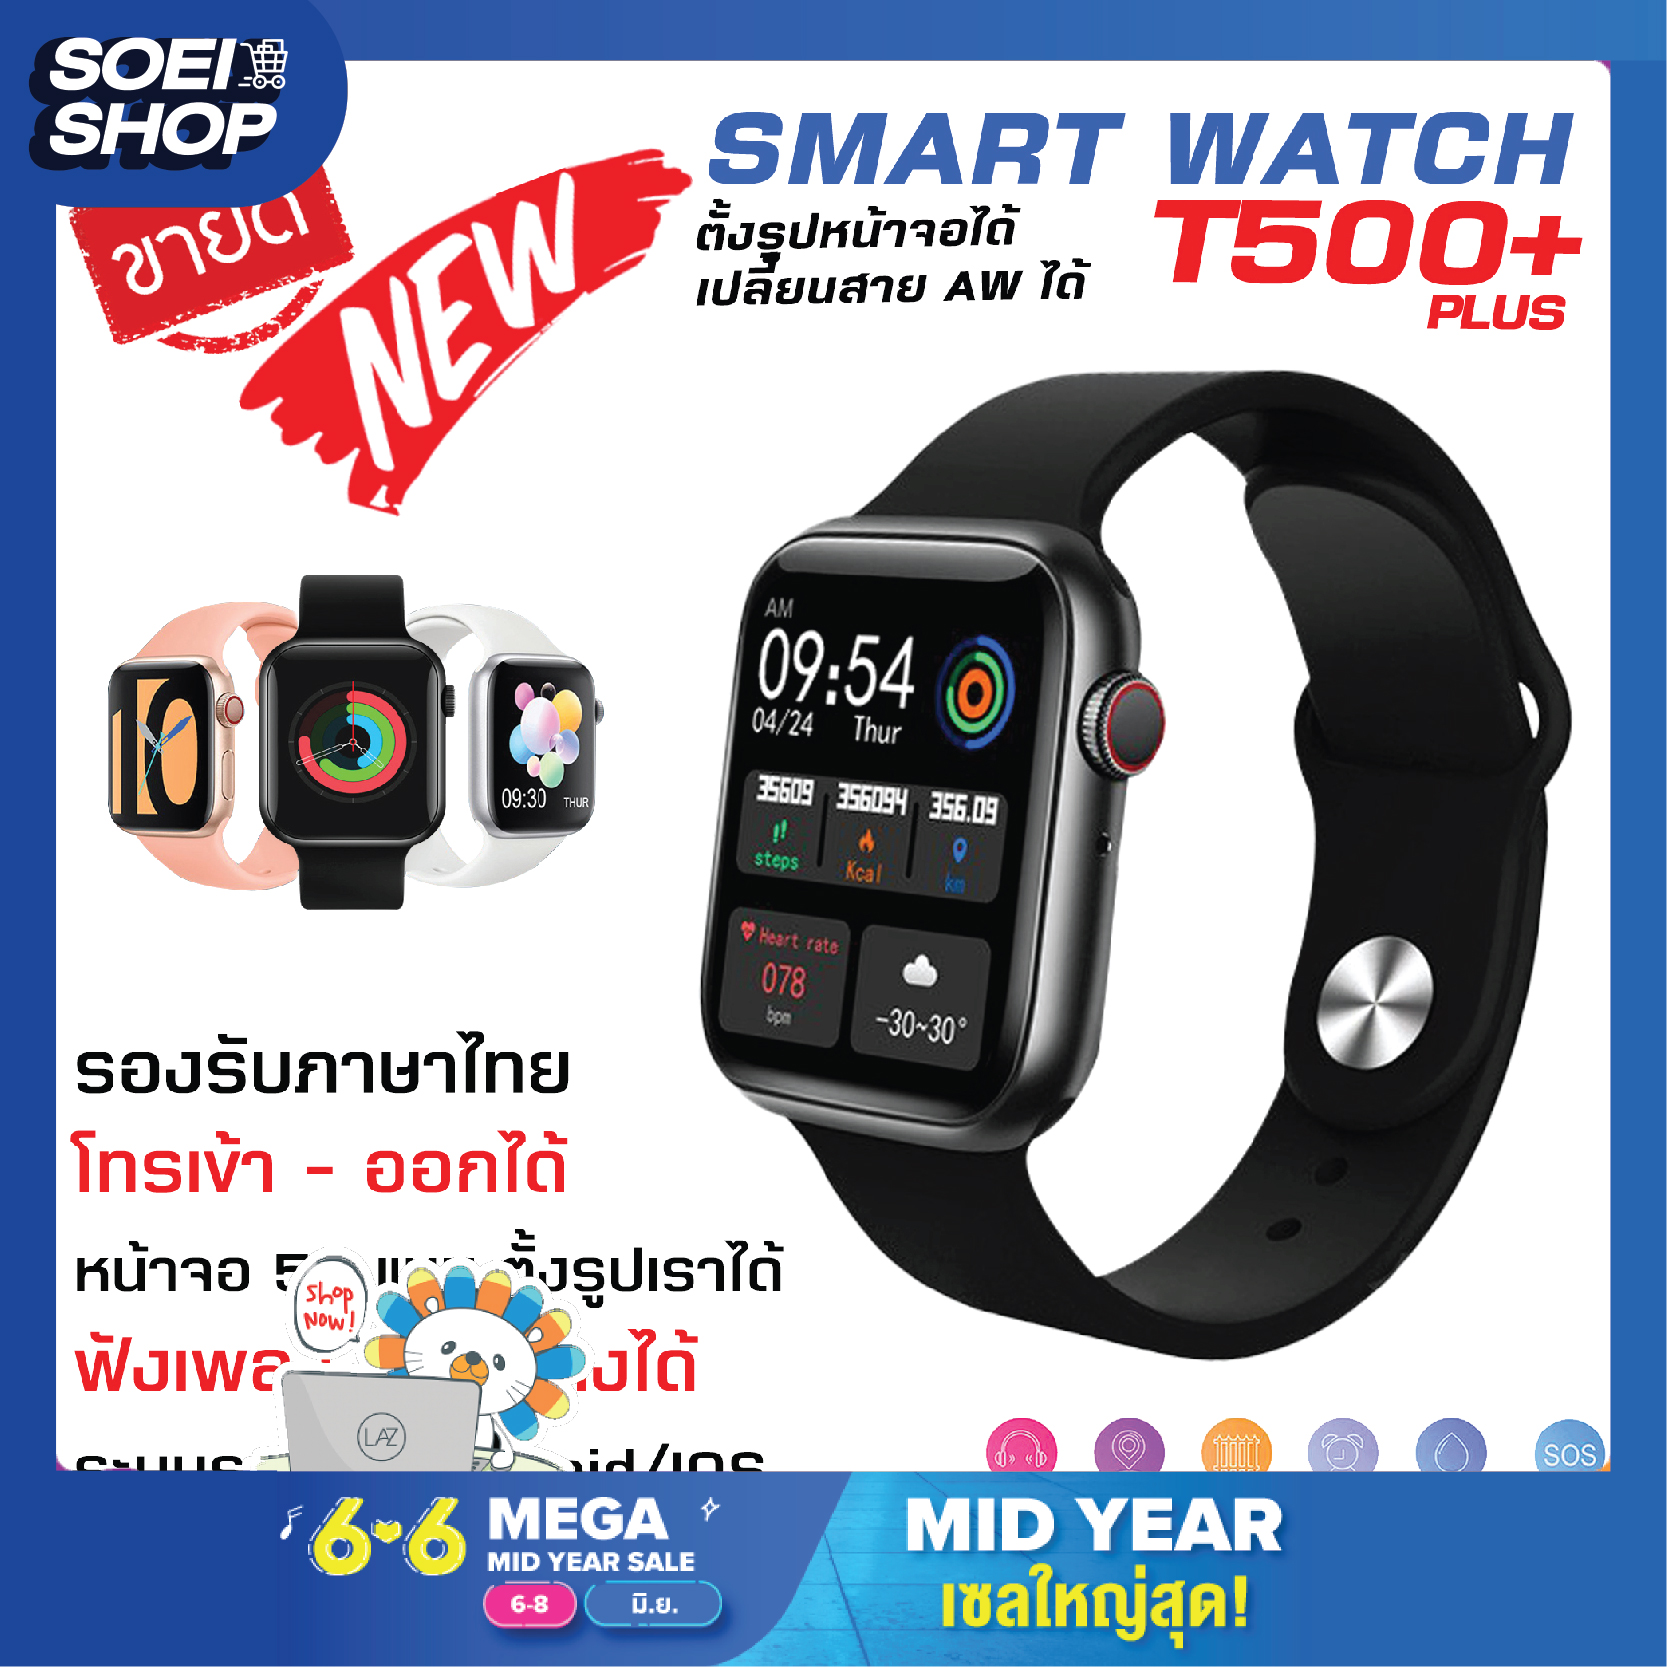 ถูกที่สุด SOEI SHOP [ส่งจากไทย] นาฬิกาสมาร์ทวอช์ Smart Watch นาฬิกาเพื่อสุขภาพ สมาร์ทวอชท์ เพื่อสุขภาพ T500 โทรเข้า-ออกได้ ฟังเพลงได้